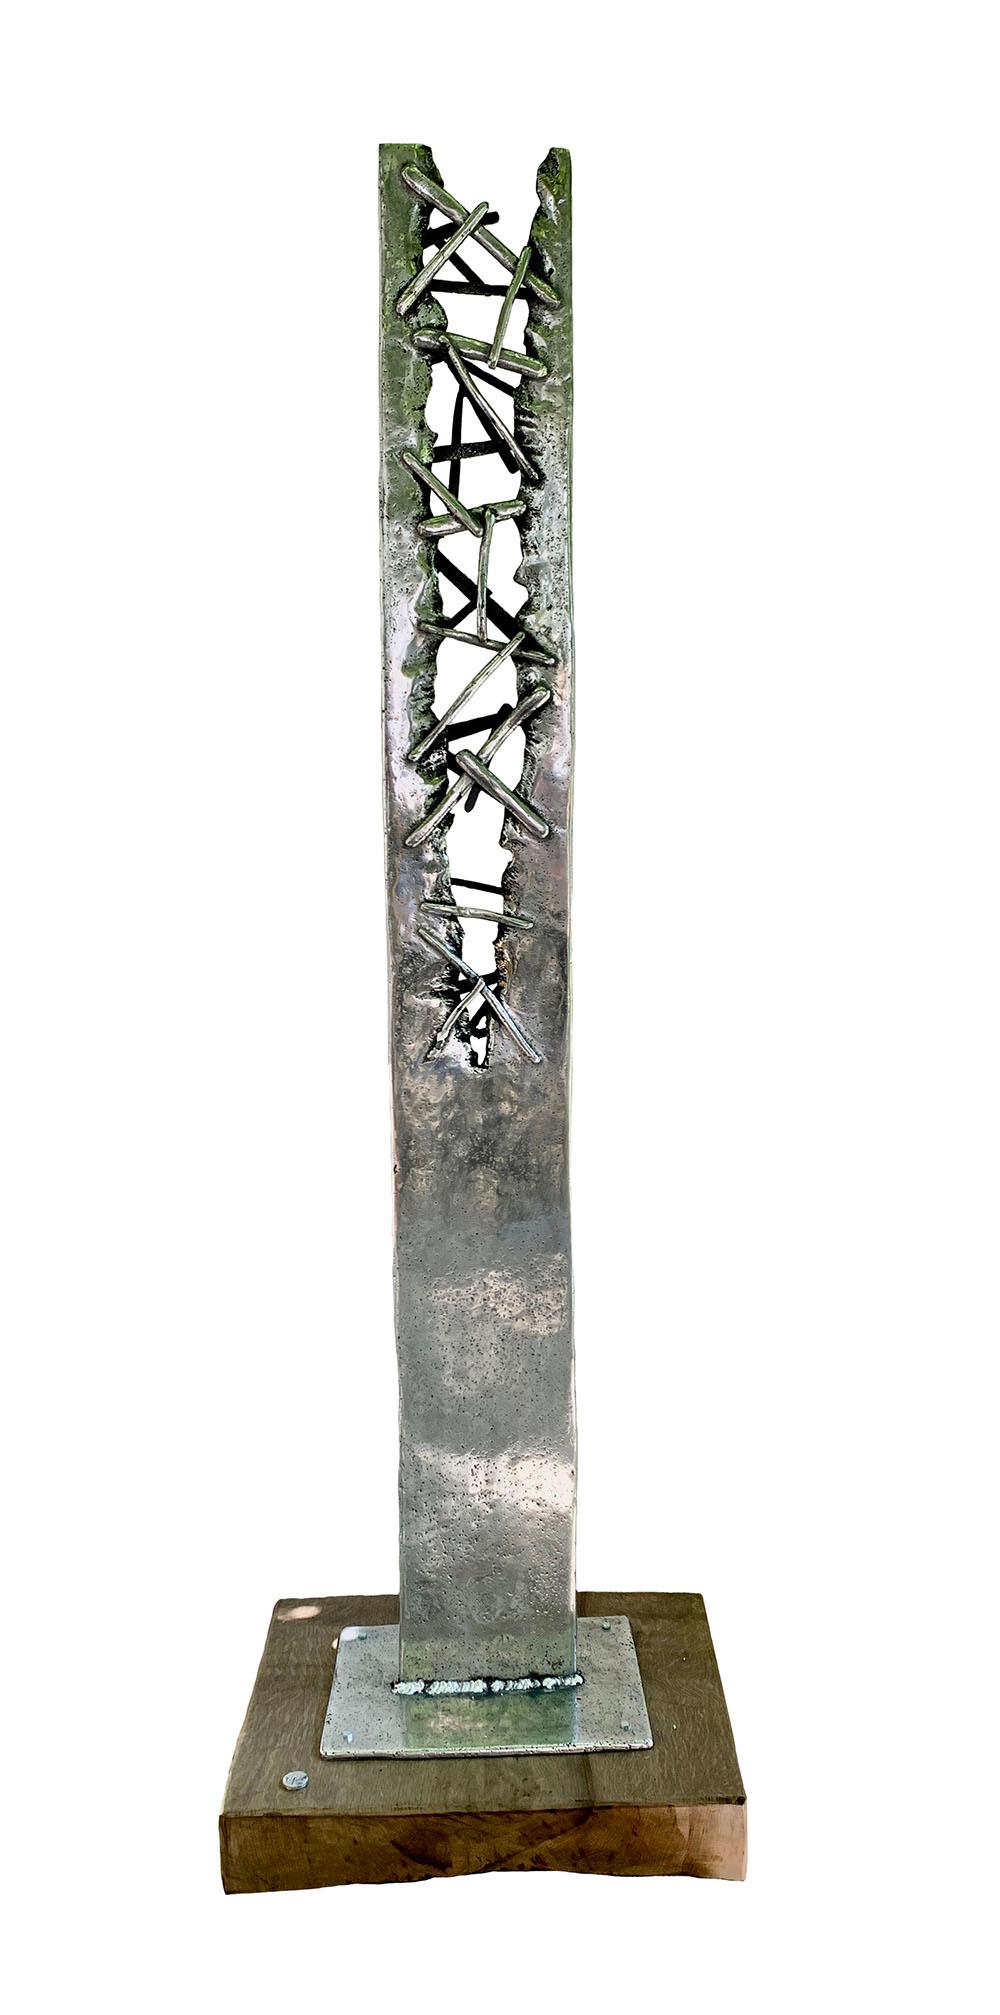  Sculpture de jardin d'extérieur Totem abstraite et moderne « Croxet » Aluminium Bois Argent - Art de David Marshall